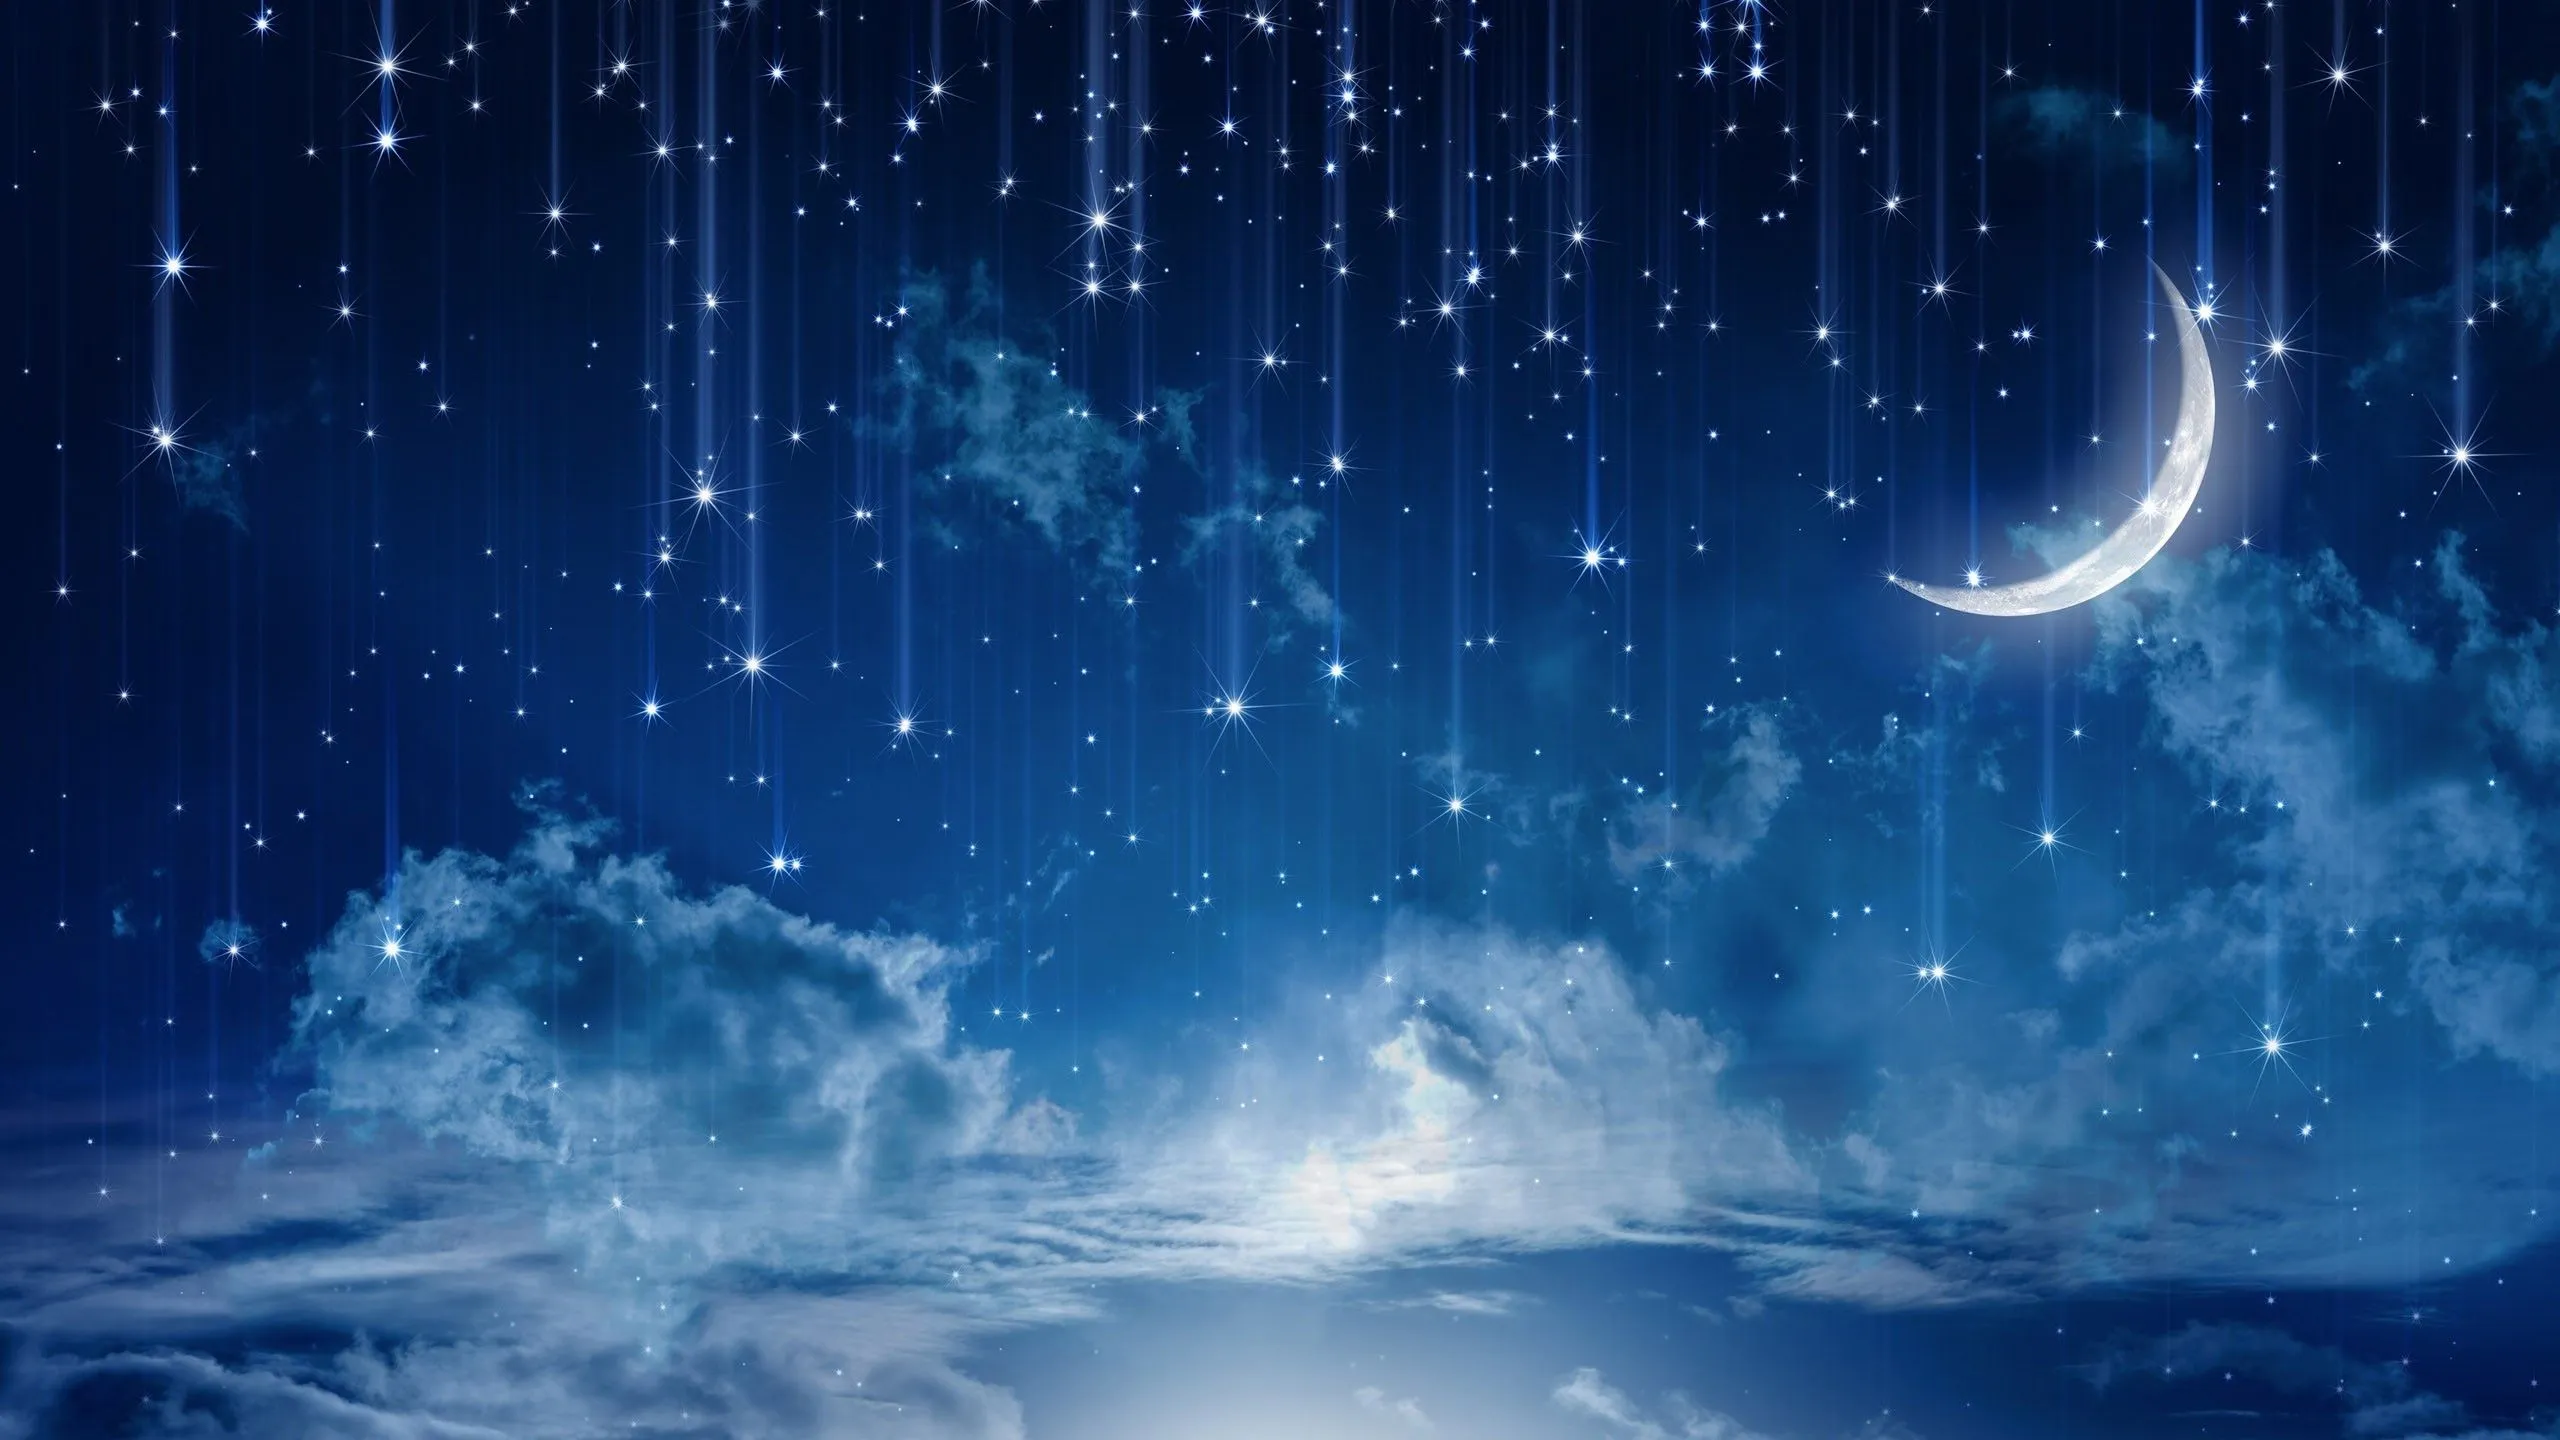 Está tu cielo lleno de estrellas? | Kevinroscu